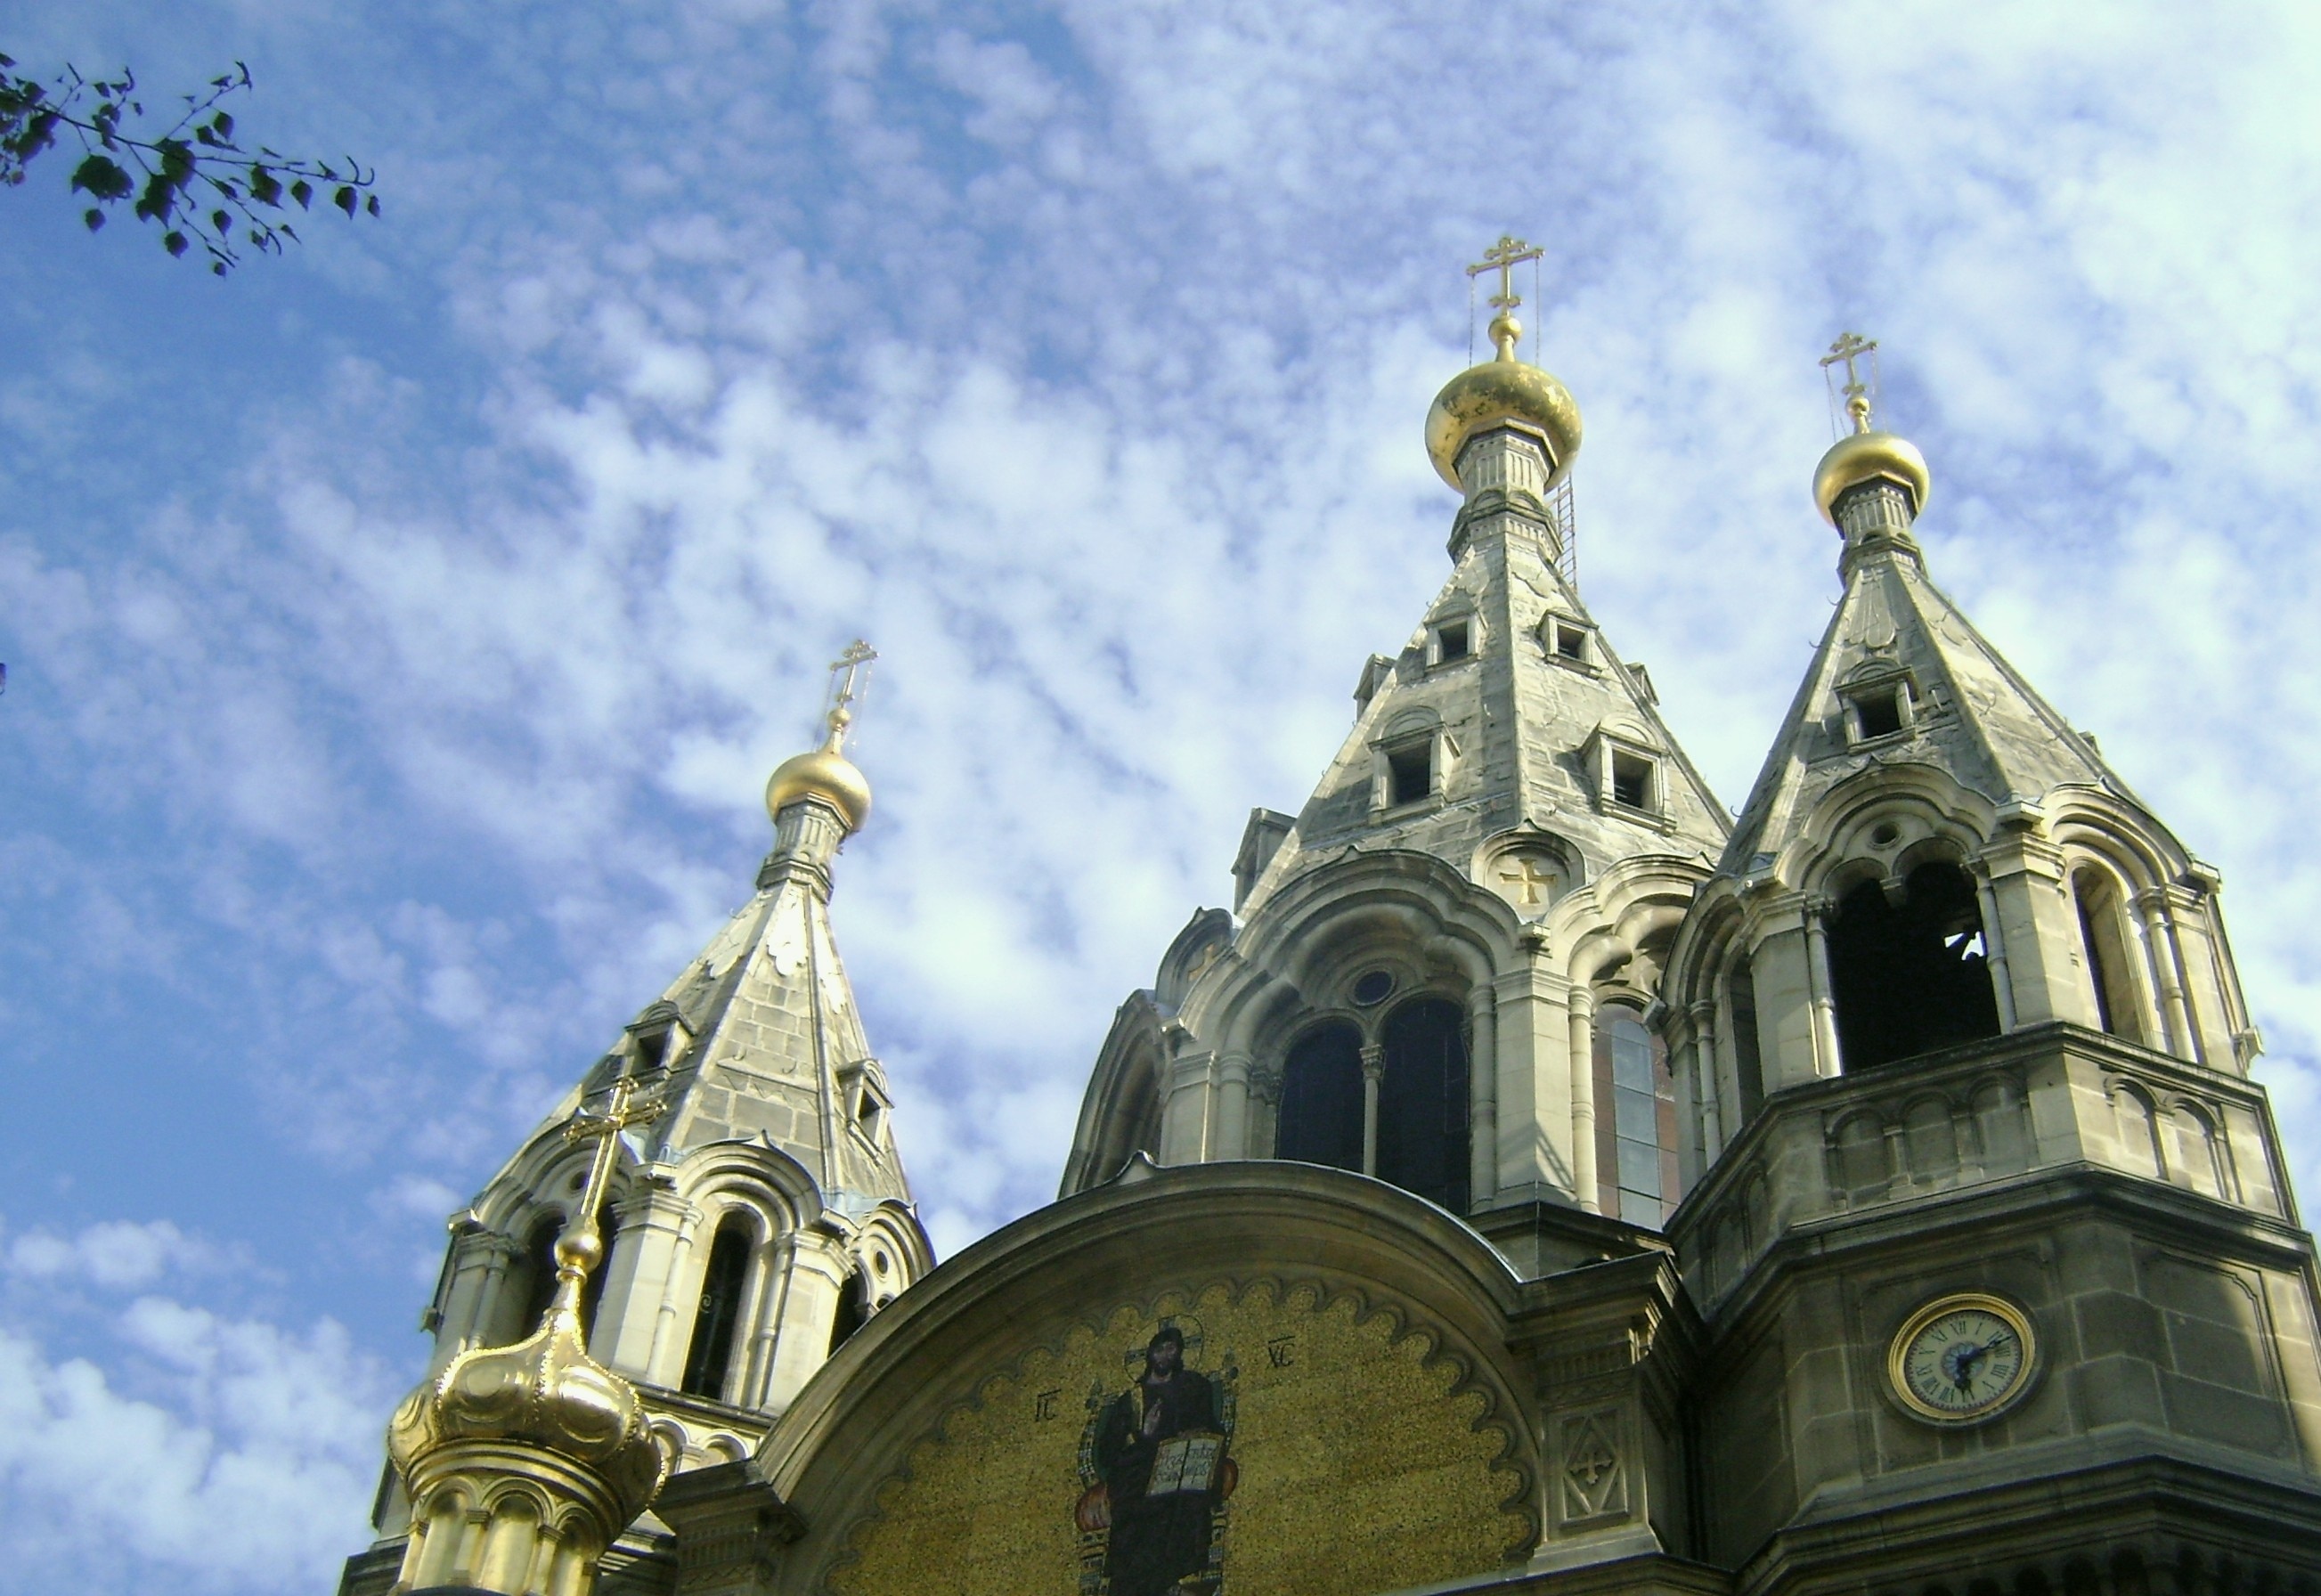 Cathédrale Saint Alexandre Nevsky, rue Daru, Paris. Cathédrale orthodoxe russe, inaugurée en 1861.